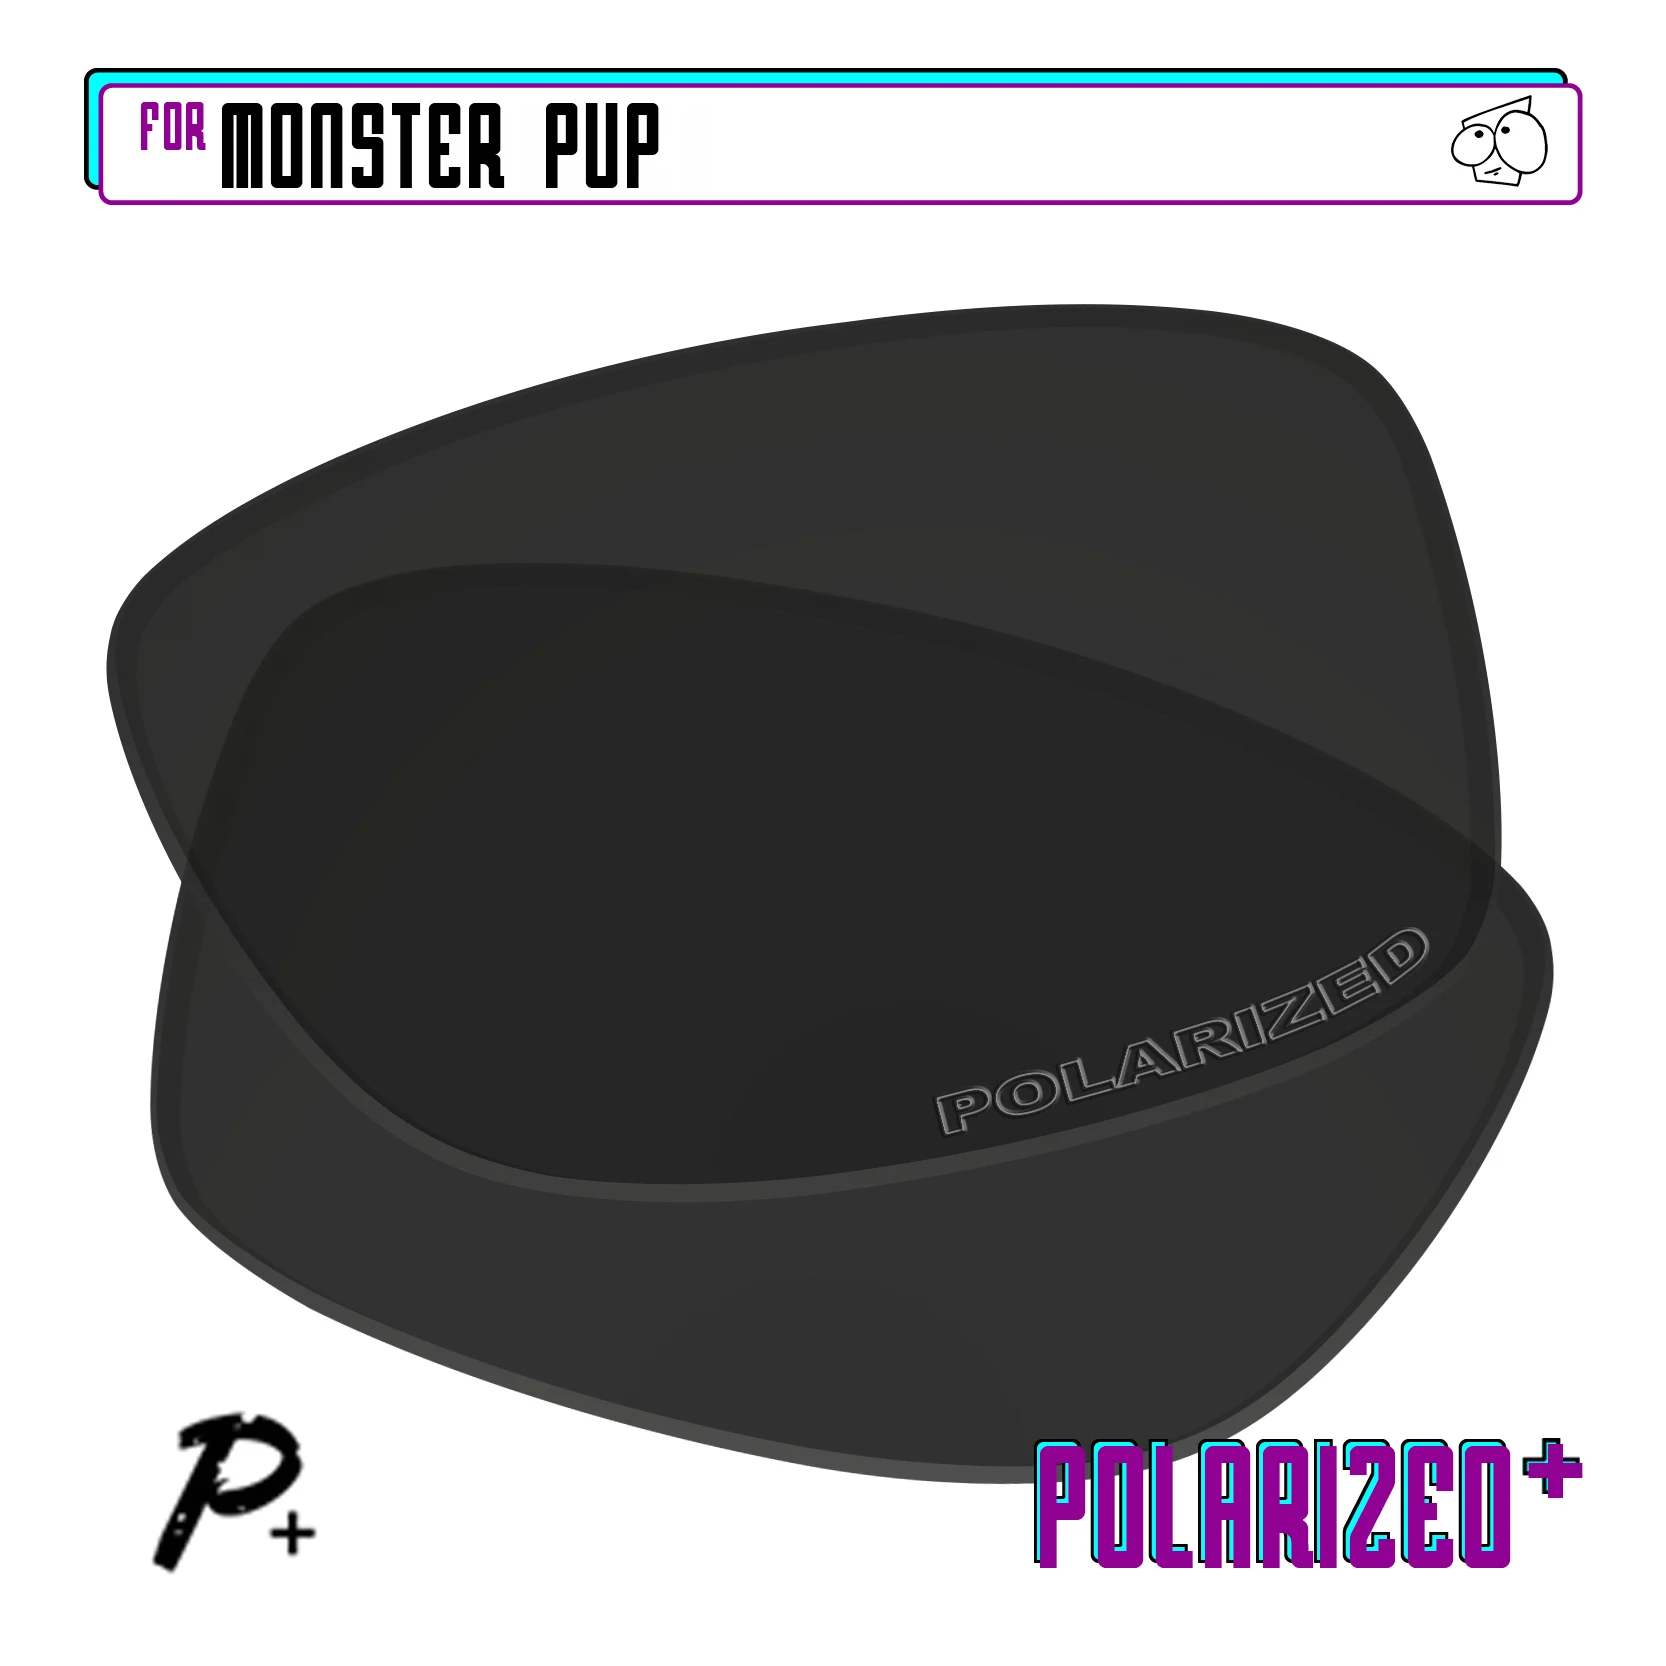 EZReplace Polarized Replacement Lenses for - Oakley Monster Pup Sunglasses - Black P Plus